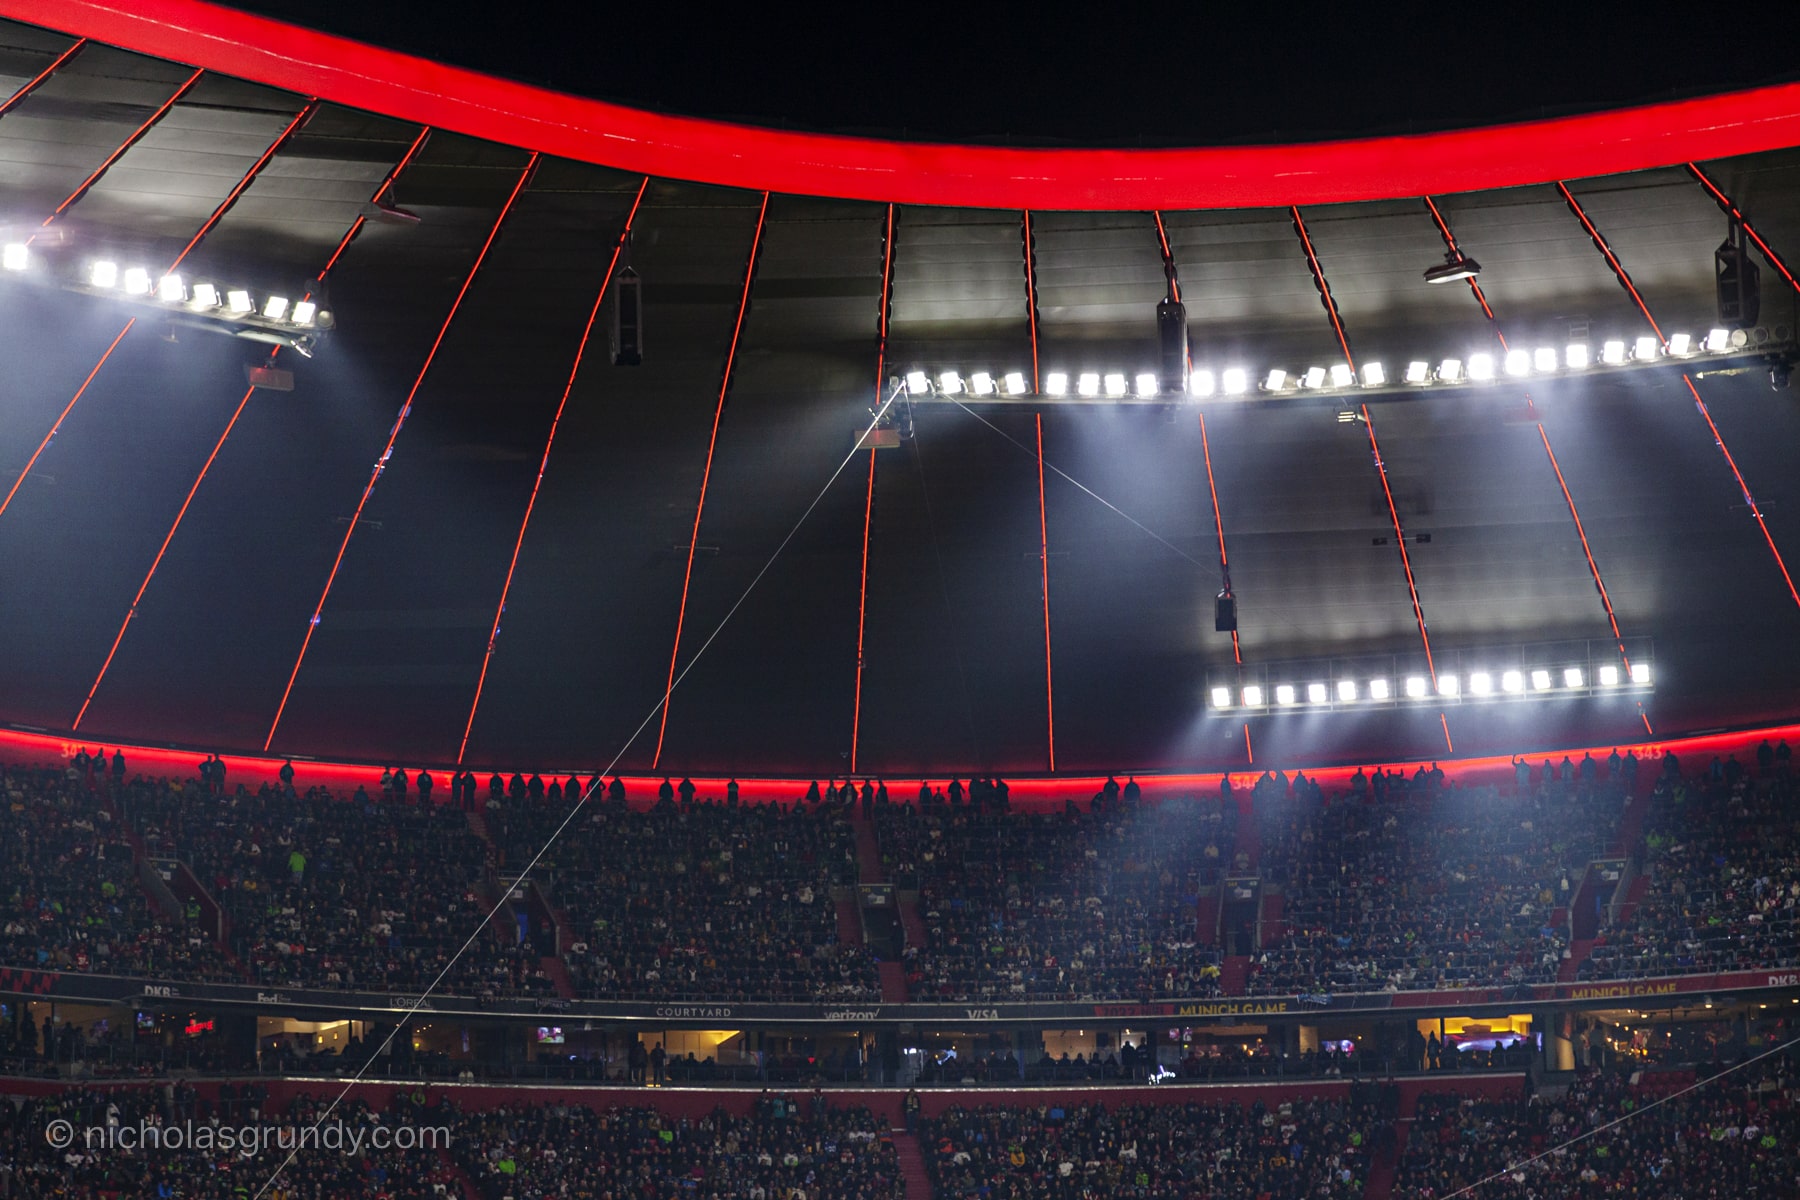 NFL Germany Games Allianz Arena Lights in Fog